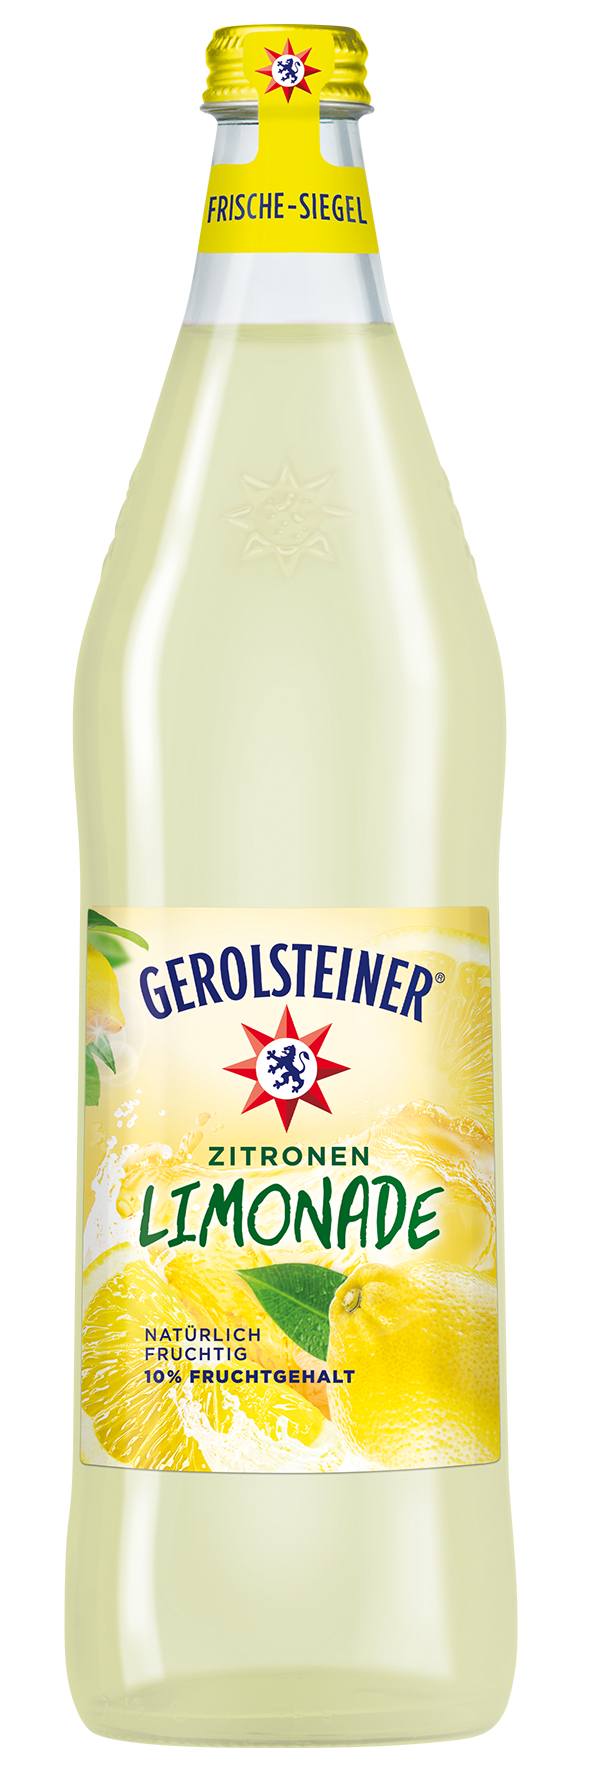 Gerolsteiner Limonade Zitrone 6x0,75l Glas